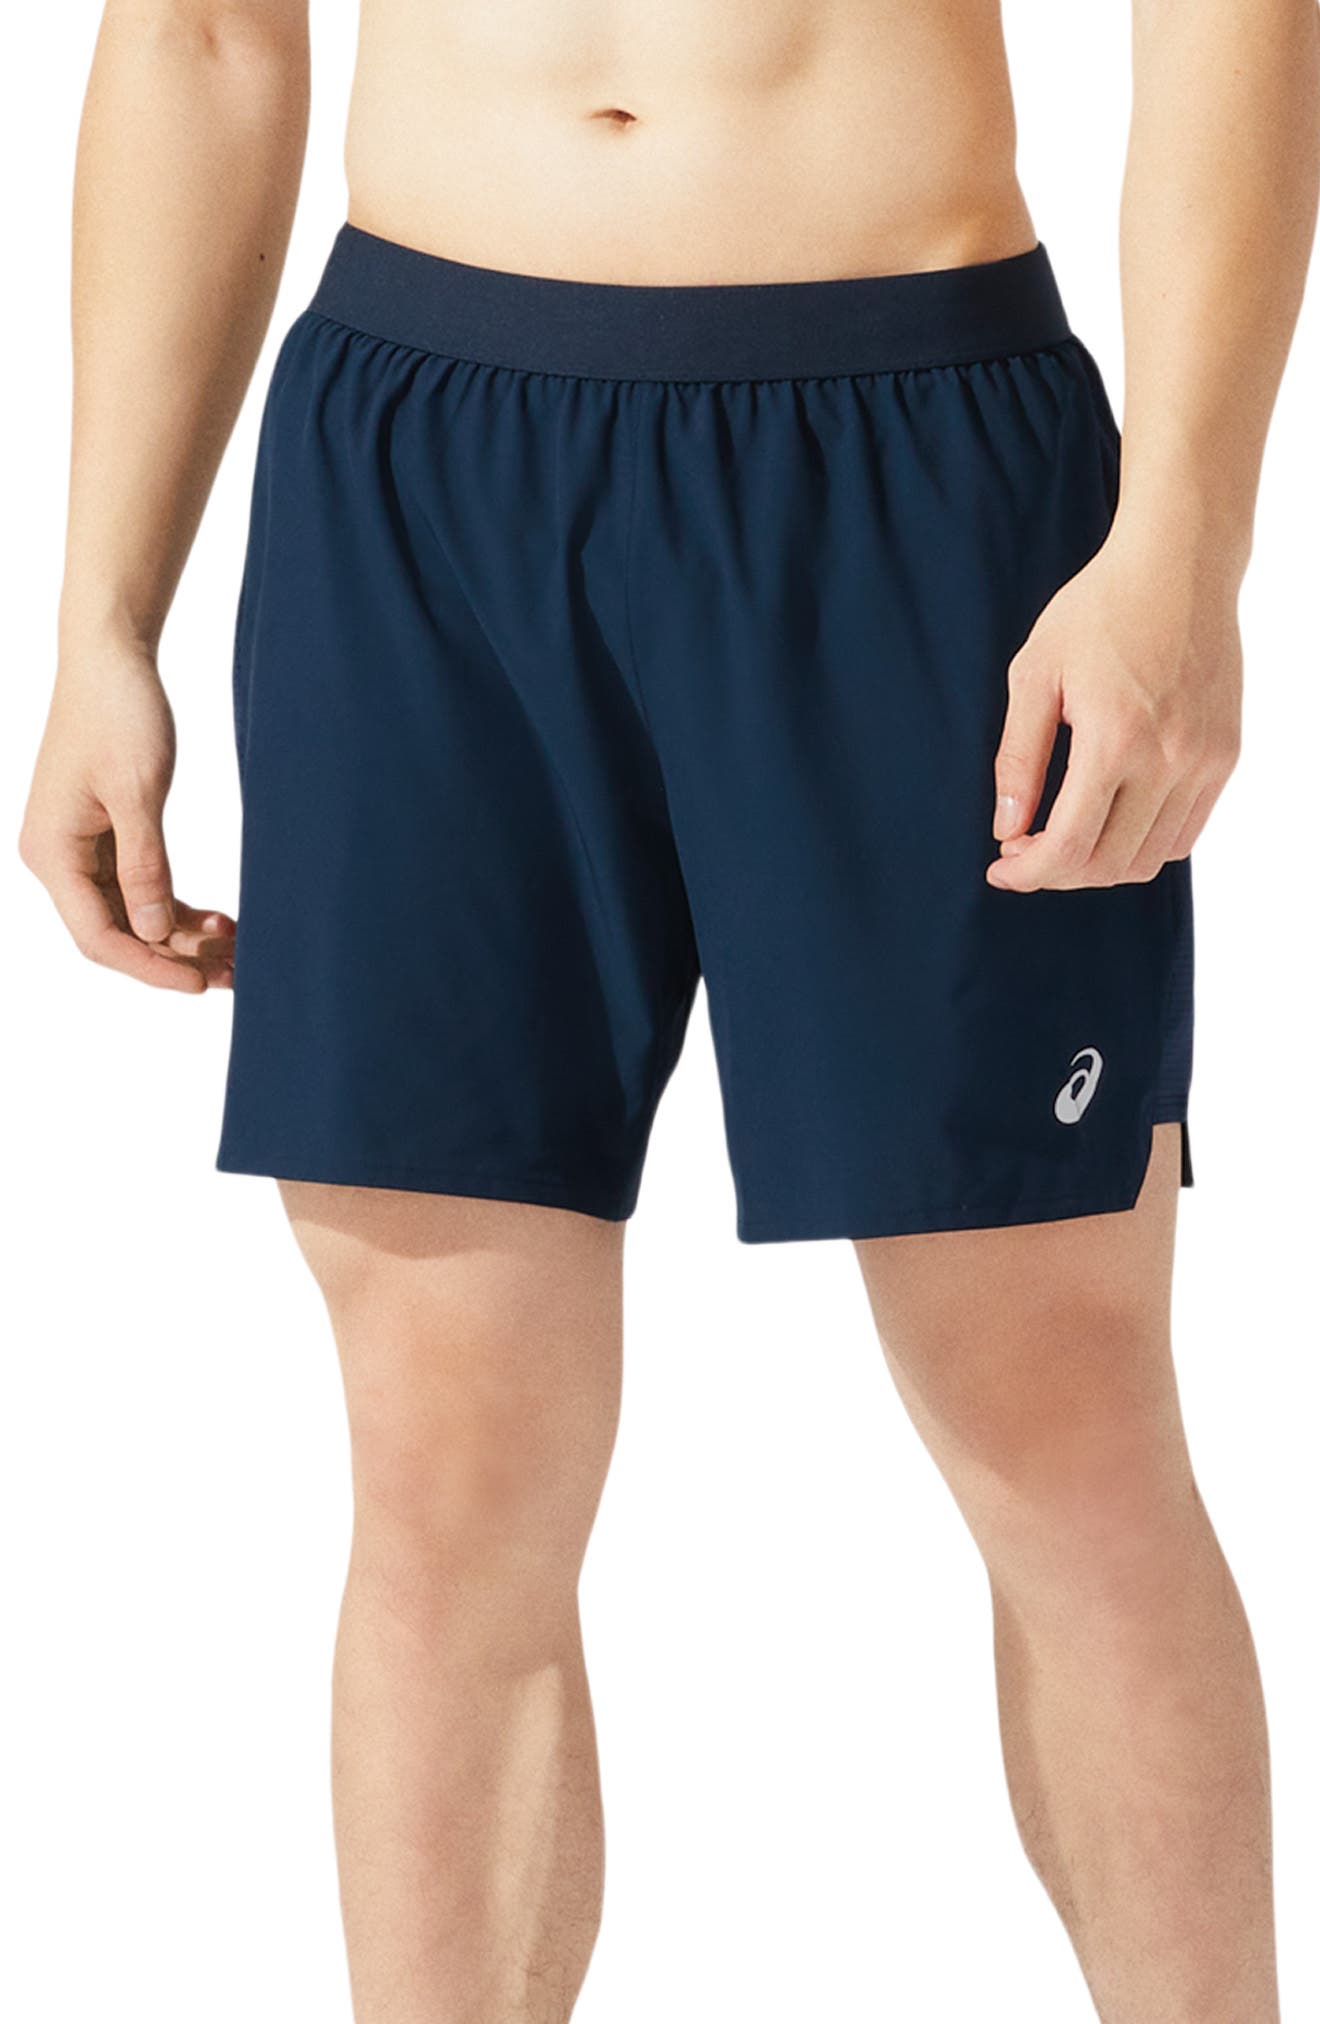 asics athletic shorts